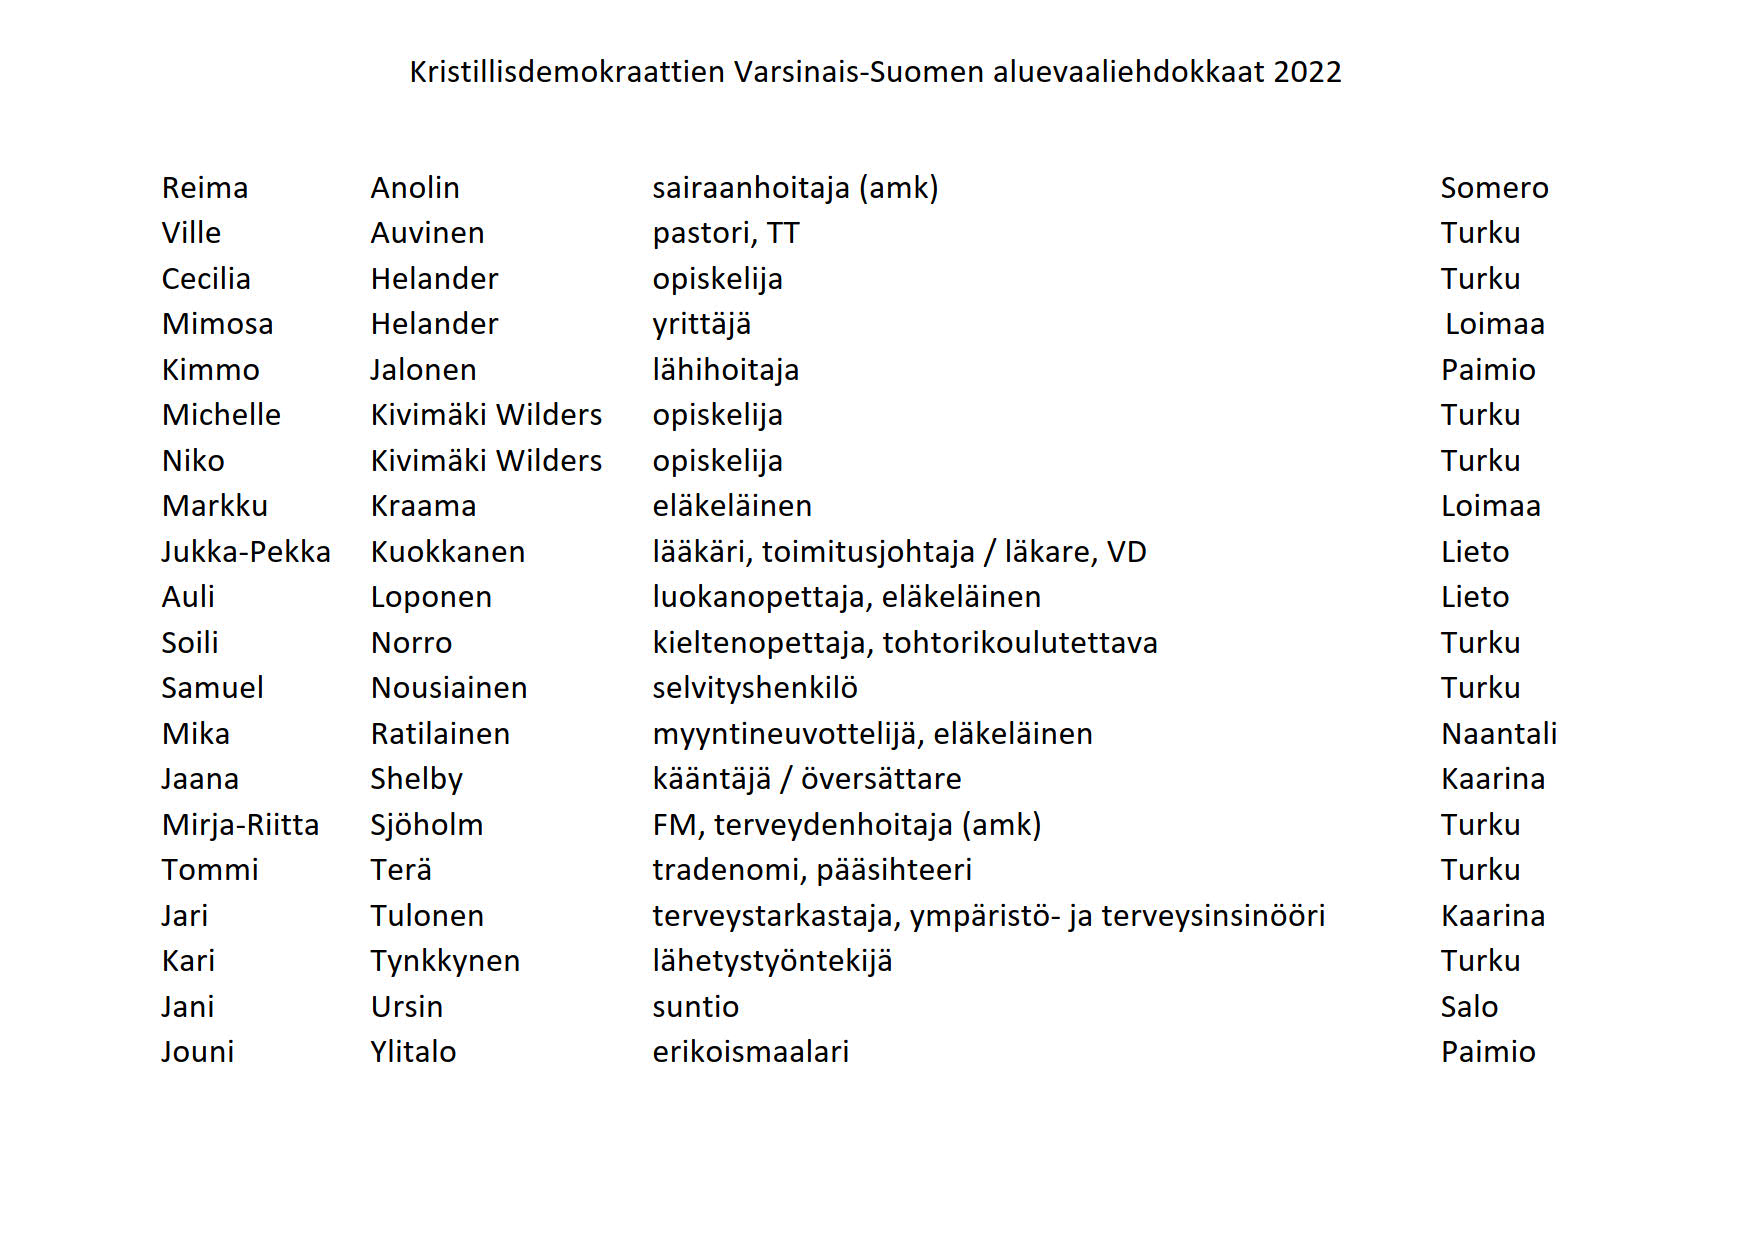 KD_Varsinais-Suomi_-_aluevaaliehdokkaat_2022.jpg